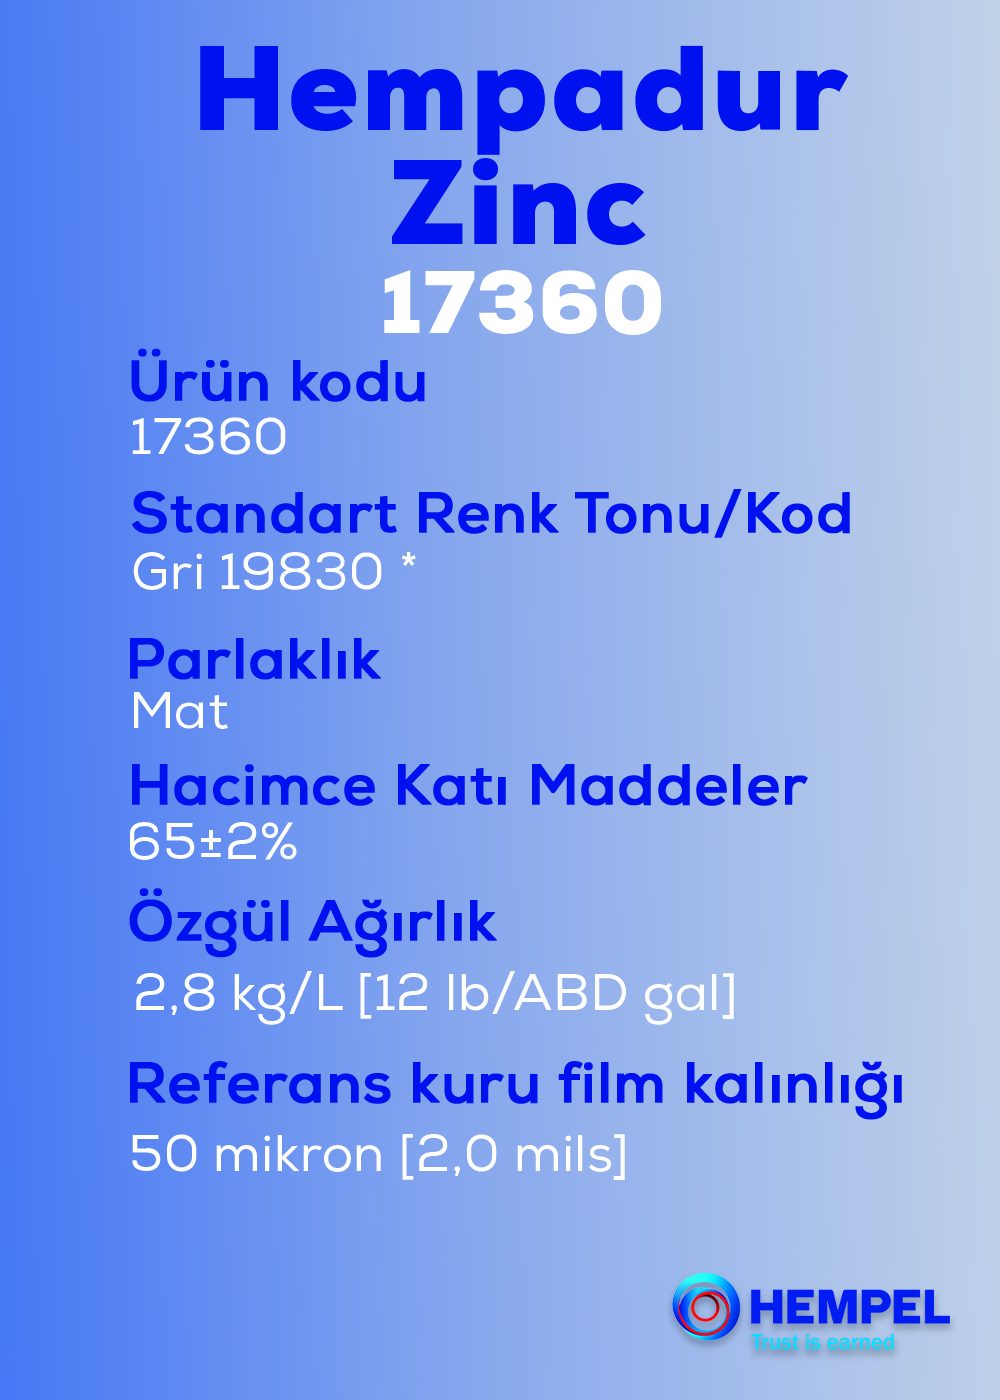 Hempadur Zinc 17360